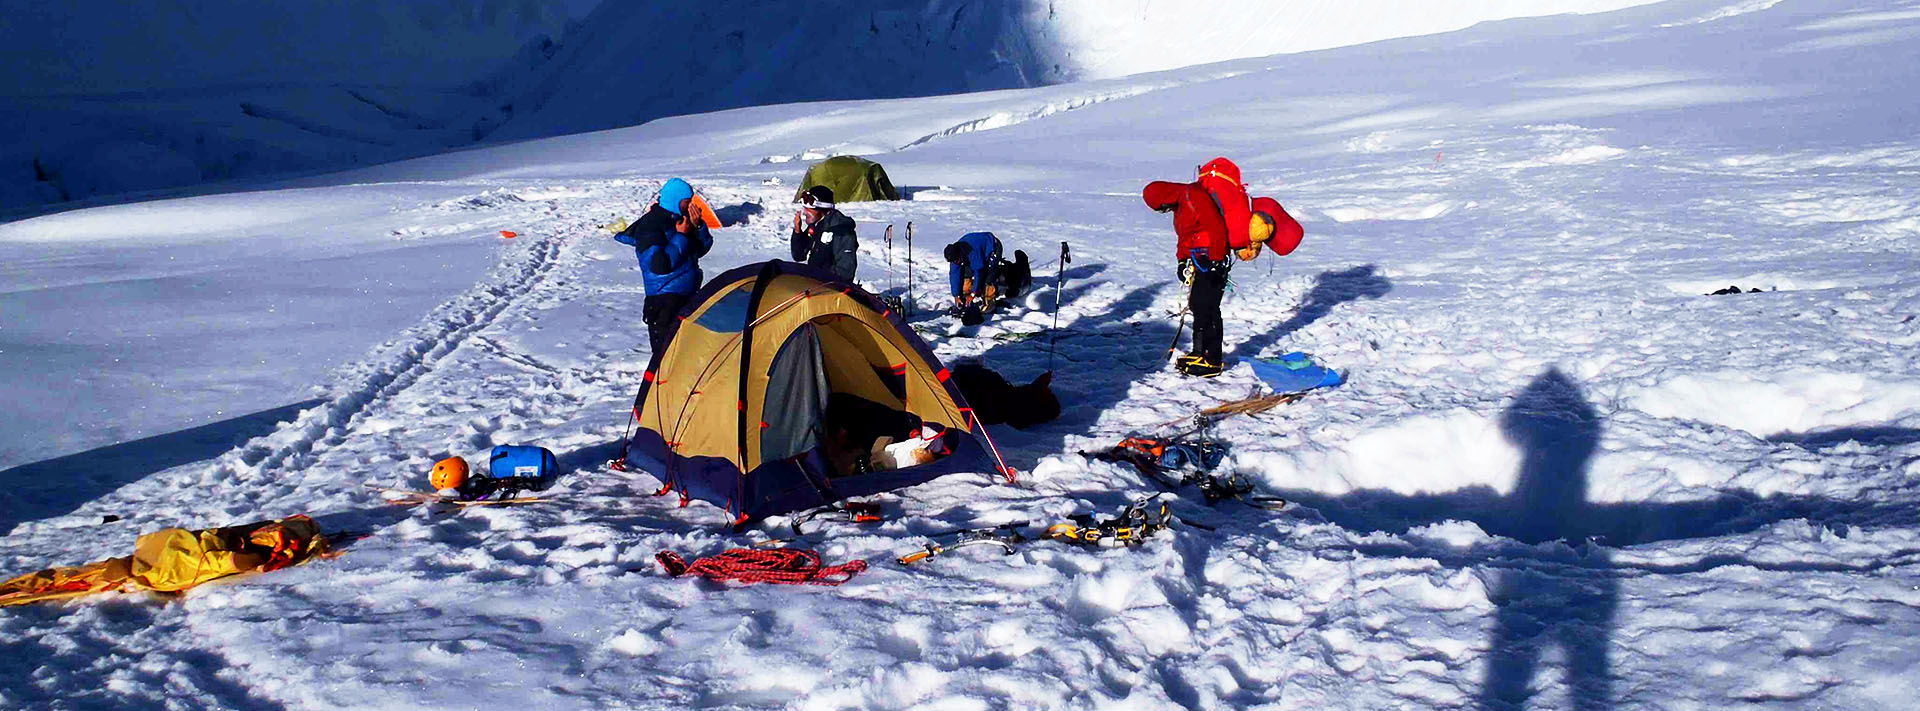 Club Alpino Ama Dablam presenta sus últimos desafíos